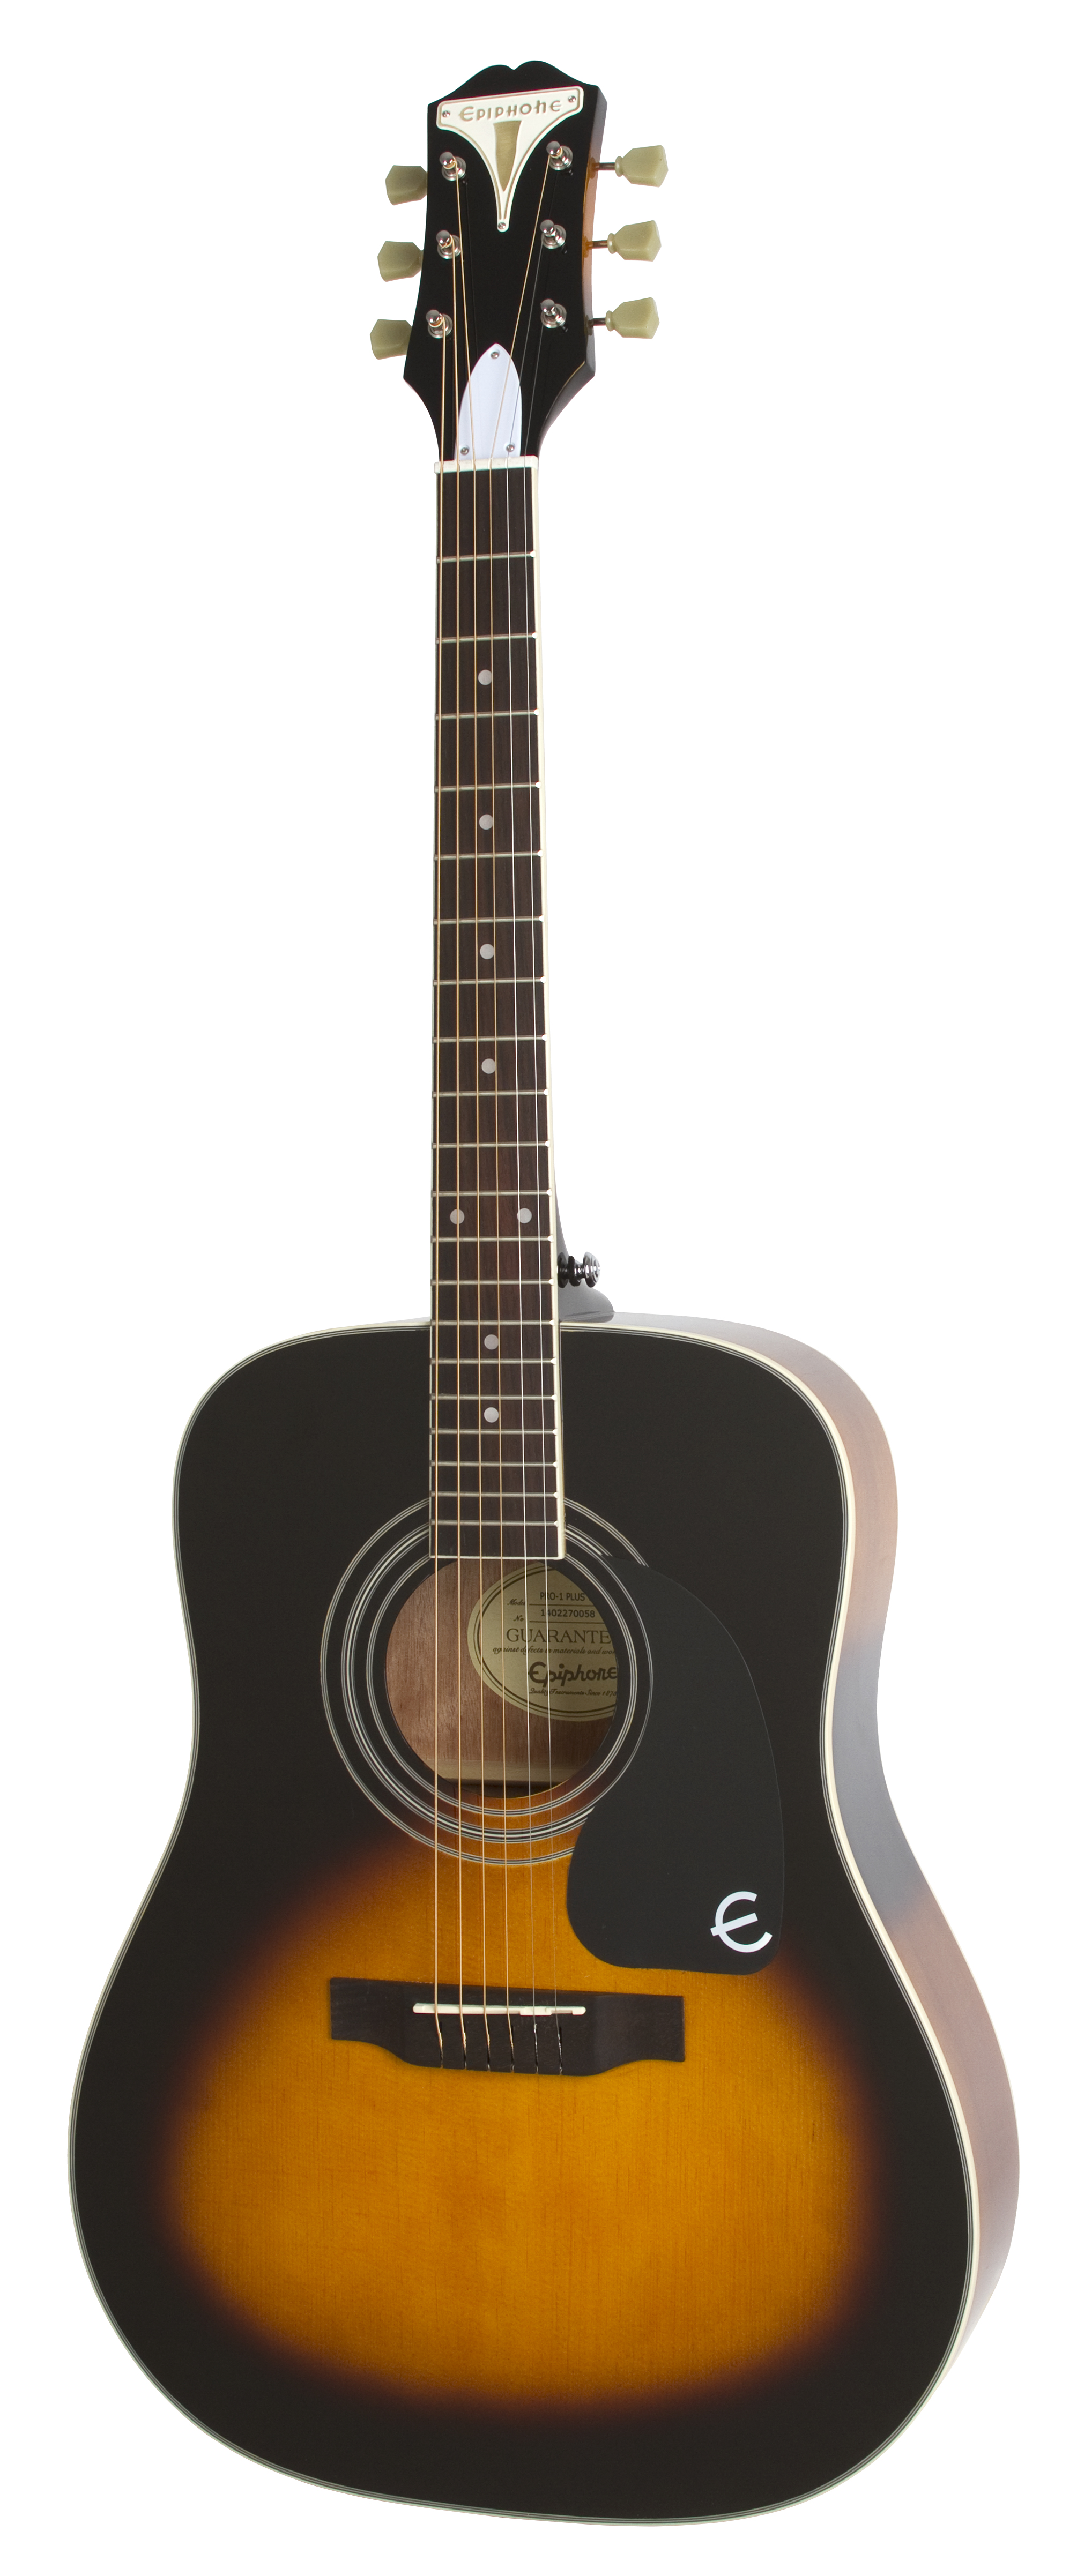 EPIPHONE PRO-1 PLUS Acoustic Vintage Sunburst акустическая гитара, санберст, верхняя дека-массив ели